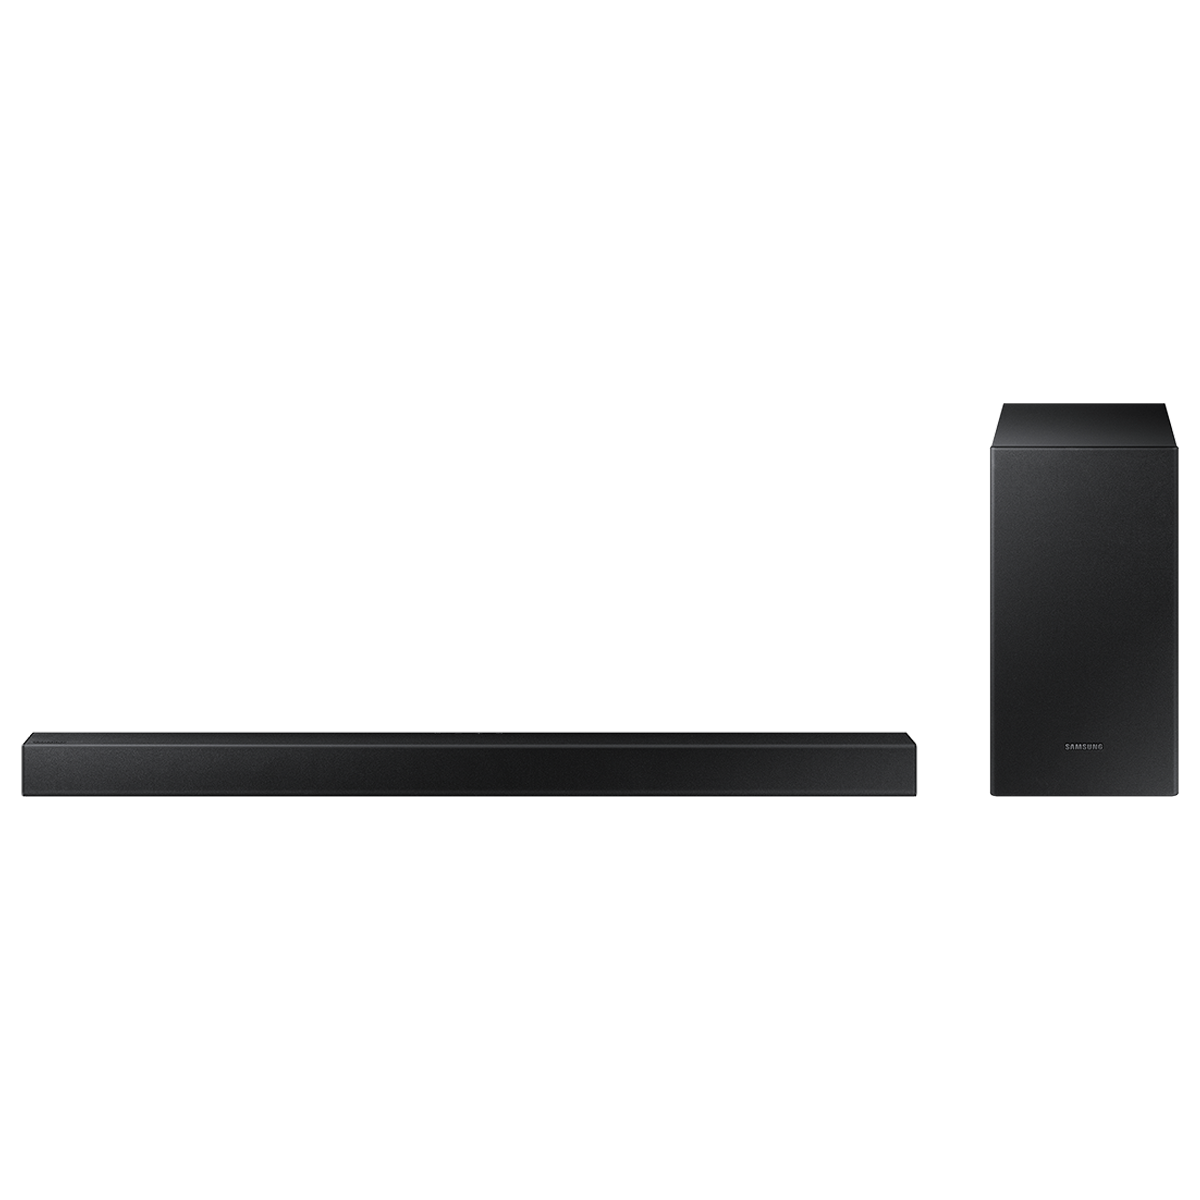 Samsung 2.1 Channel 150 Watts Soundbar with Subwoofer (Wireless Surround Sound, HW-T420/XL, Black)_1